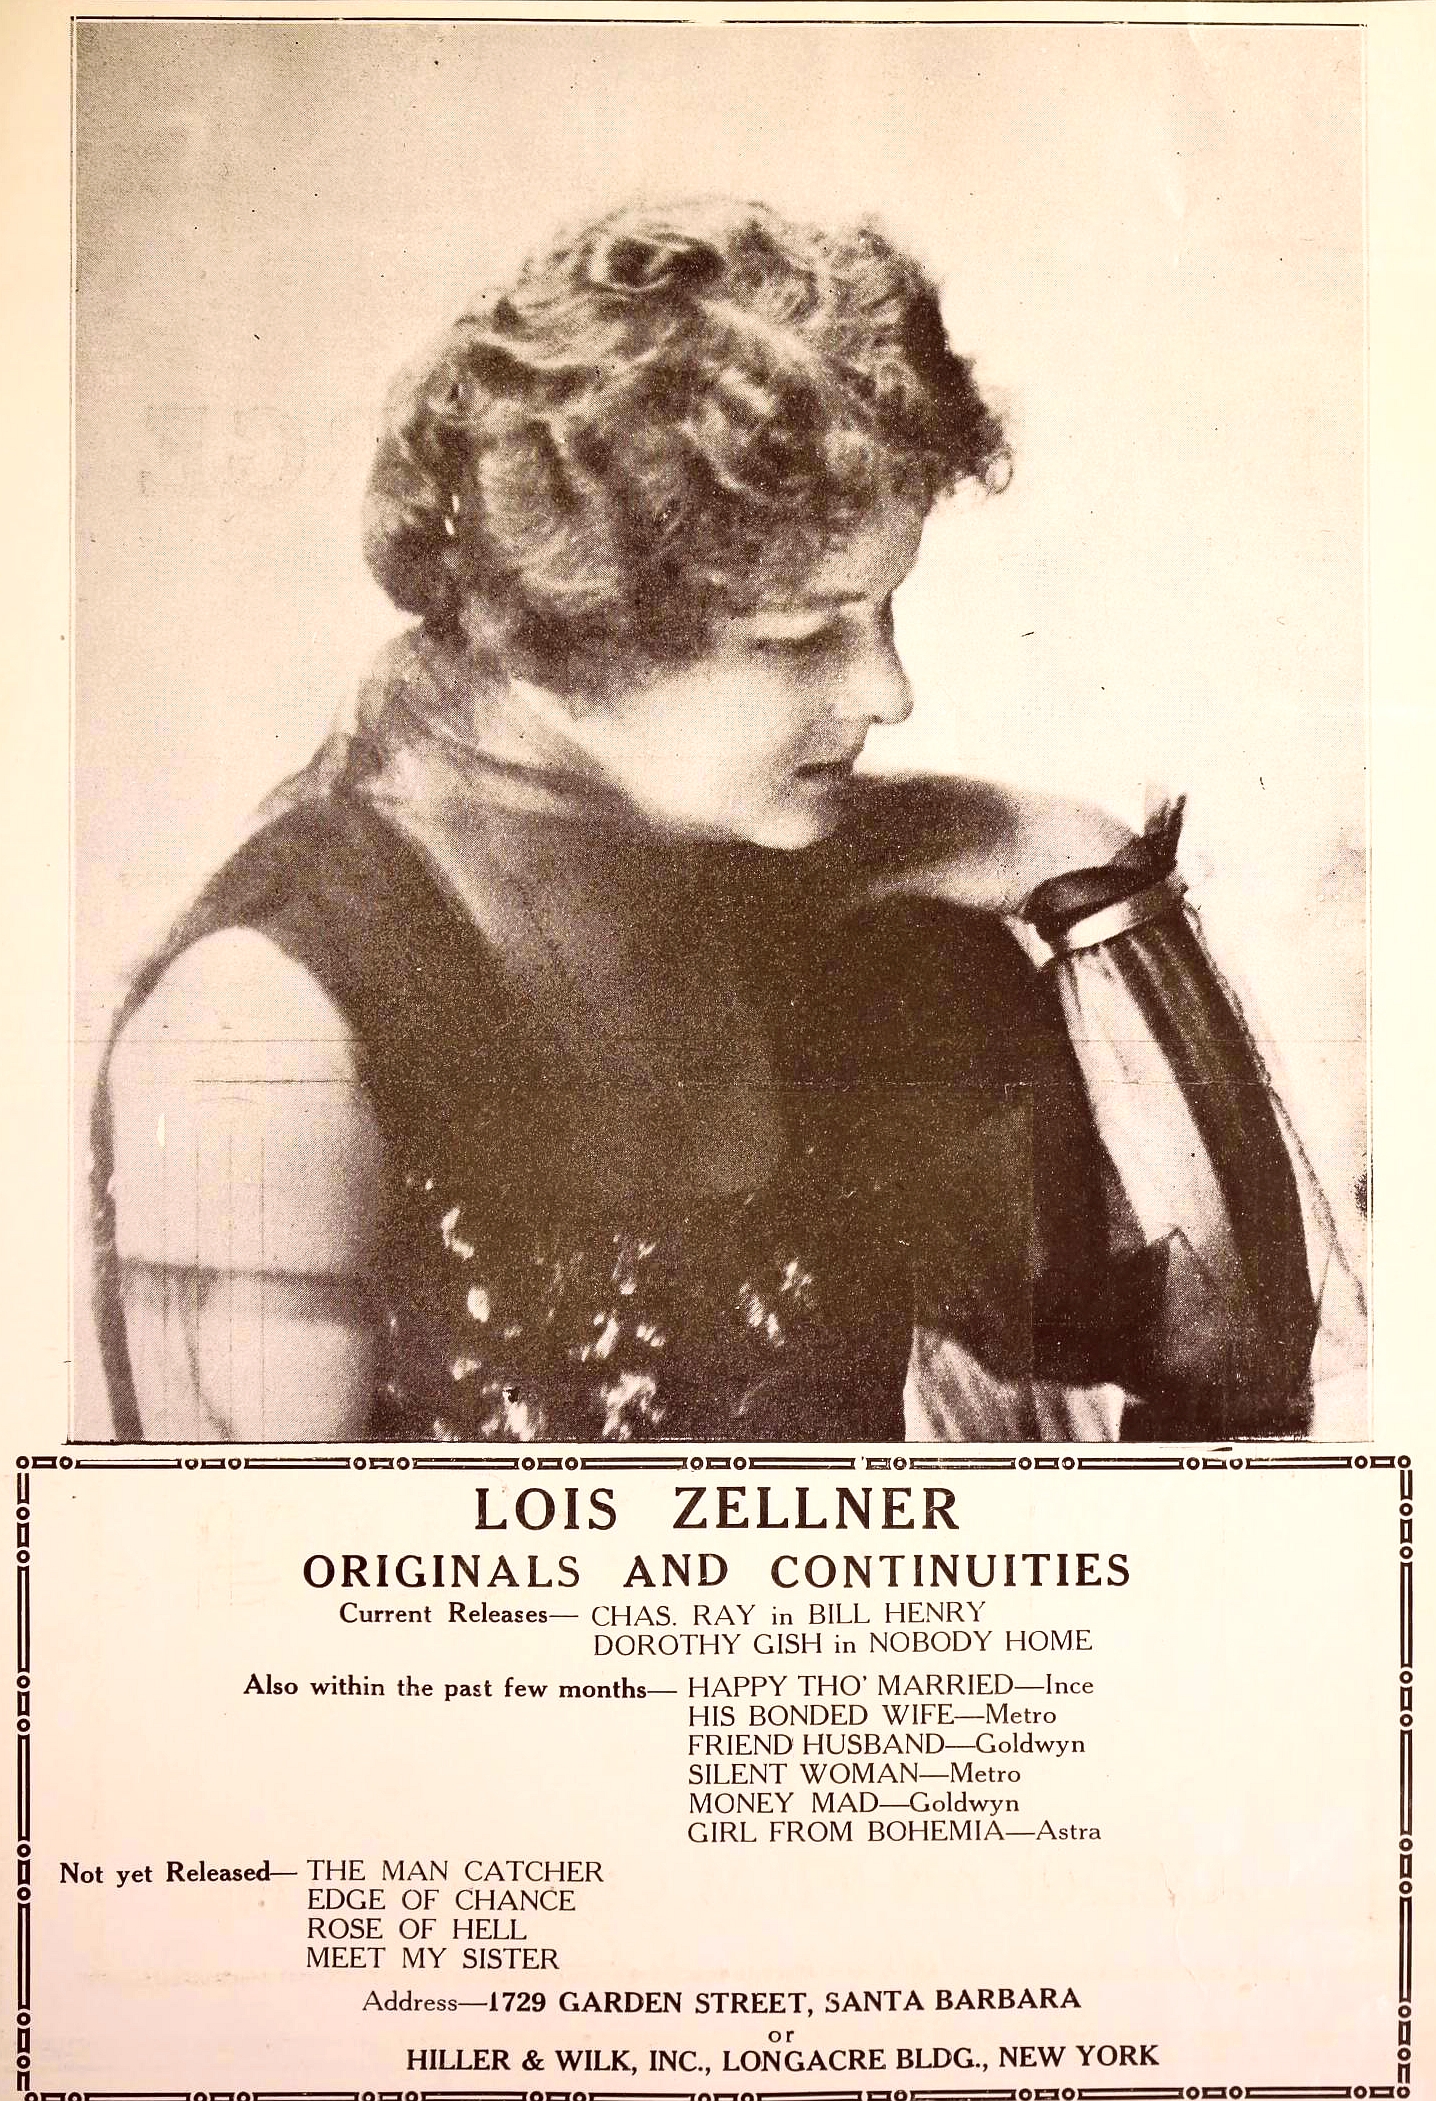 Lois Zellner